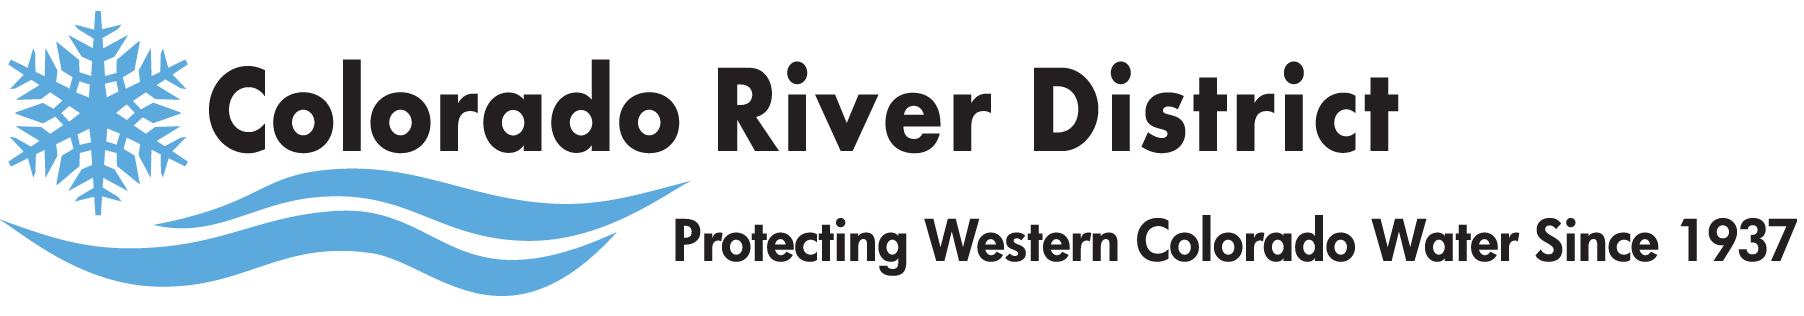 Colorado River District Logo